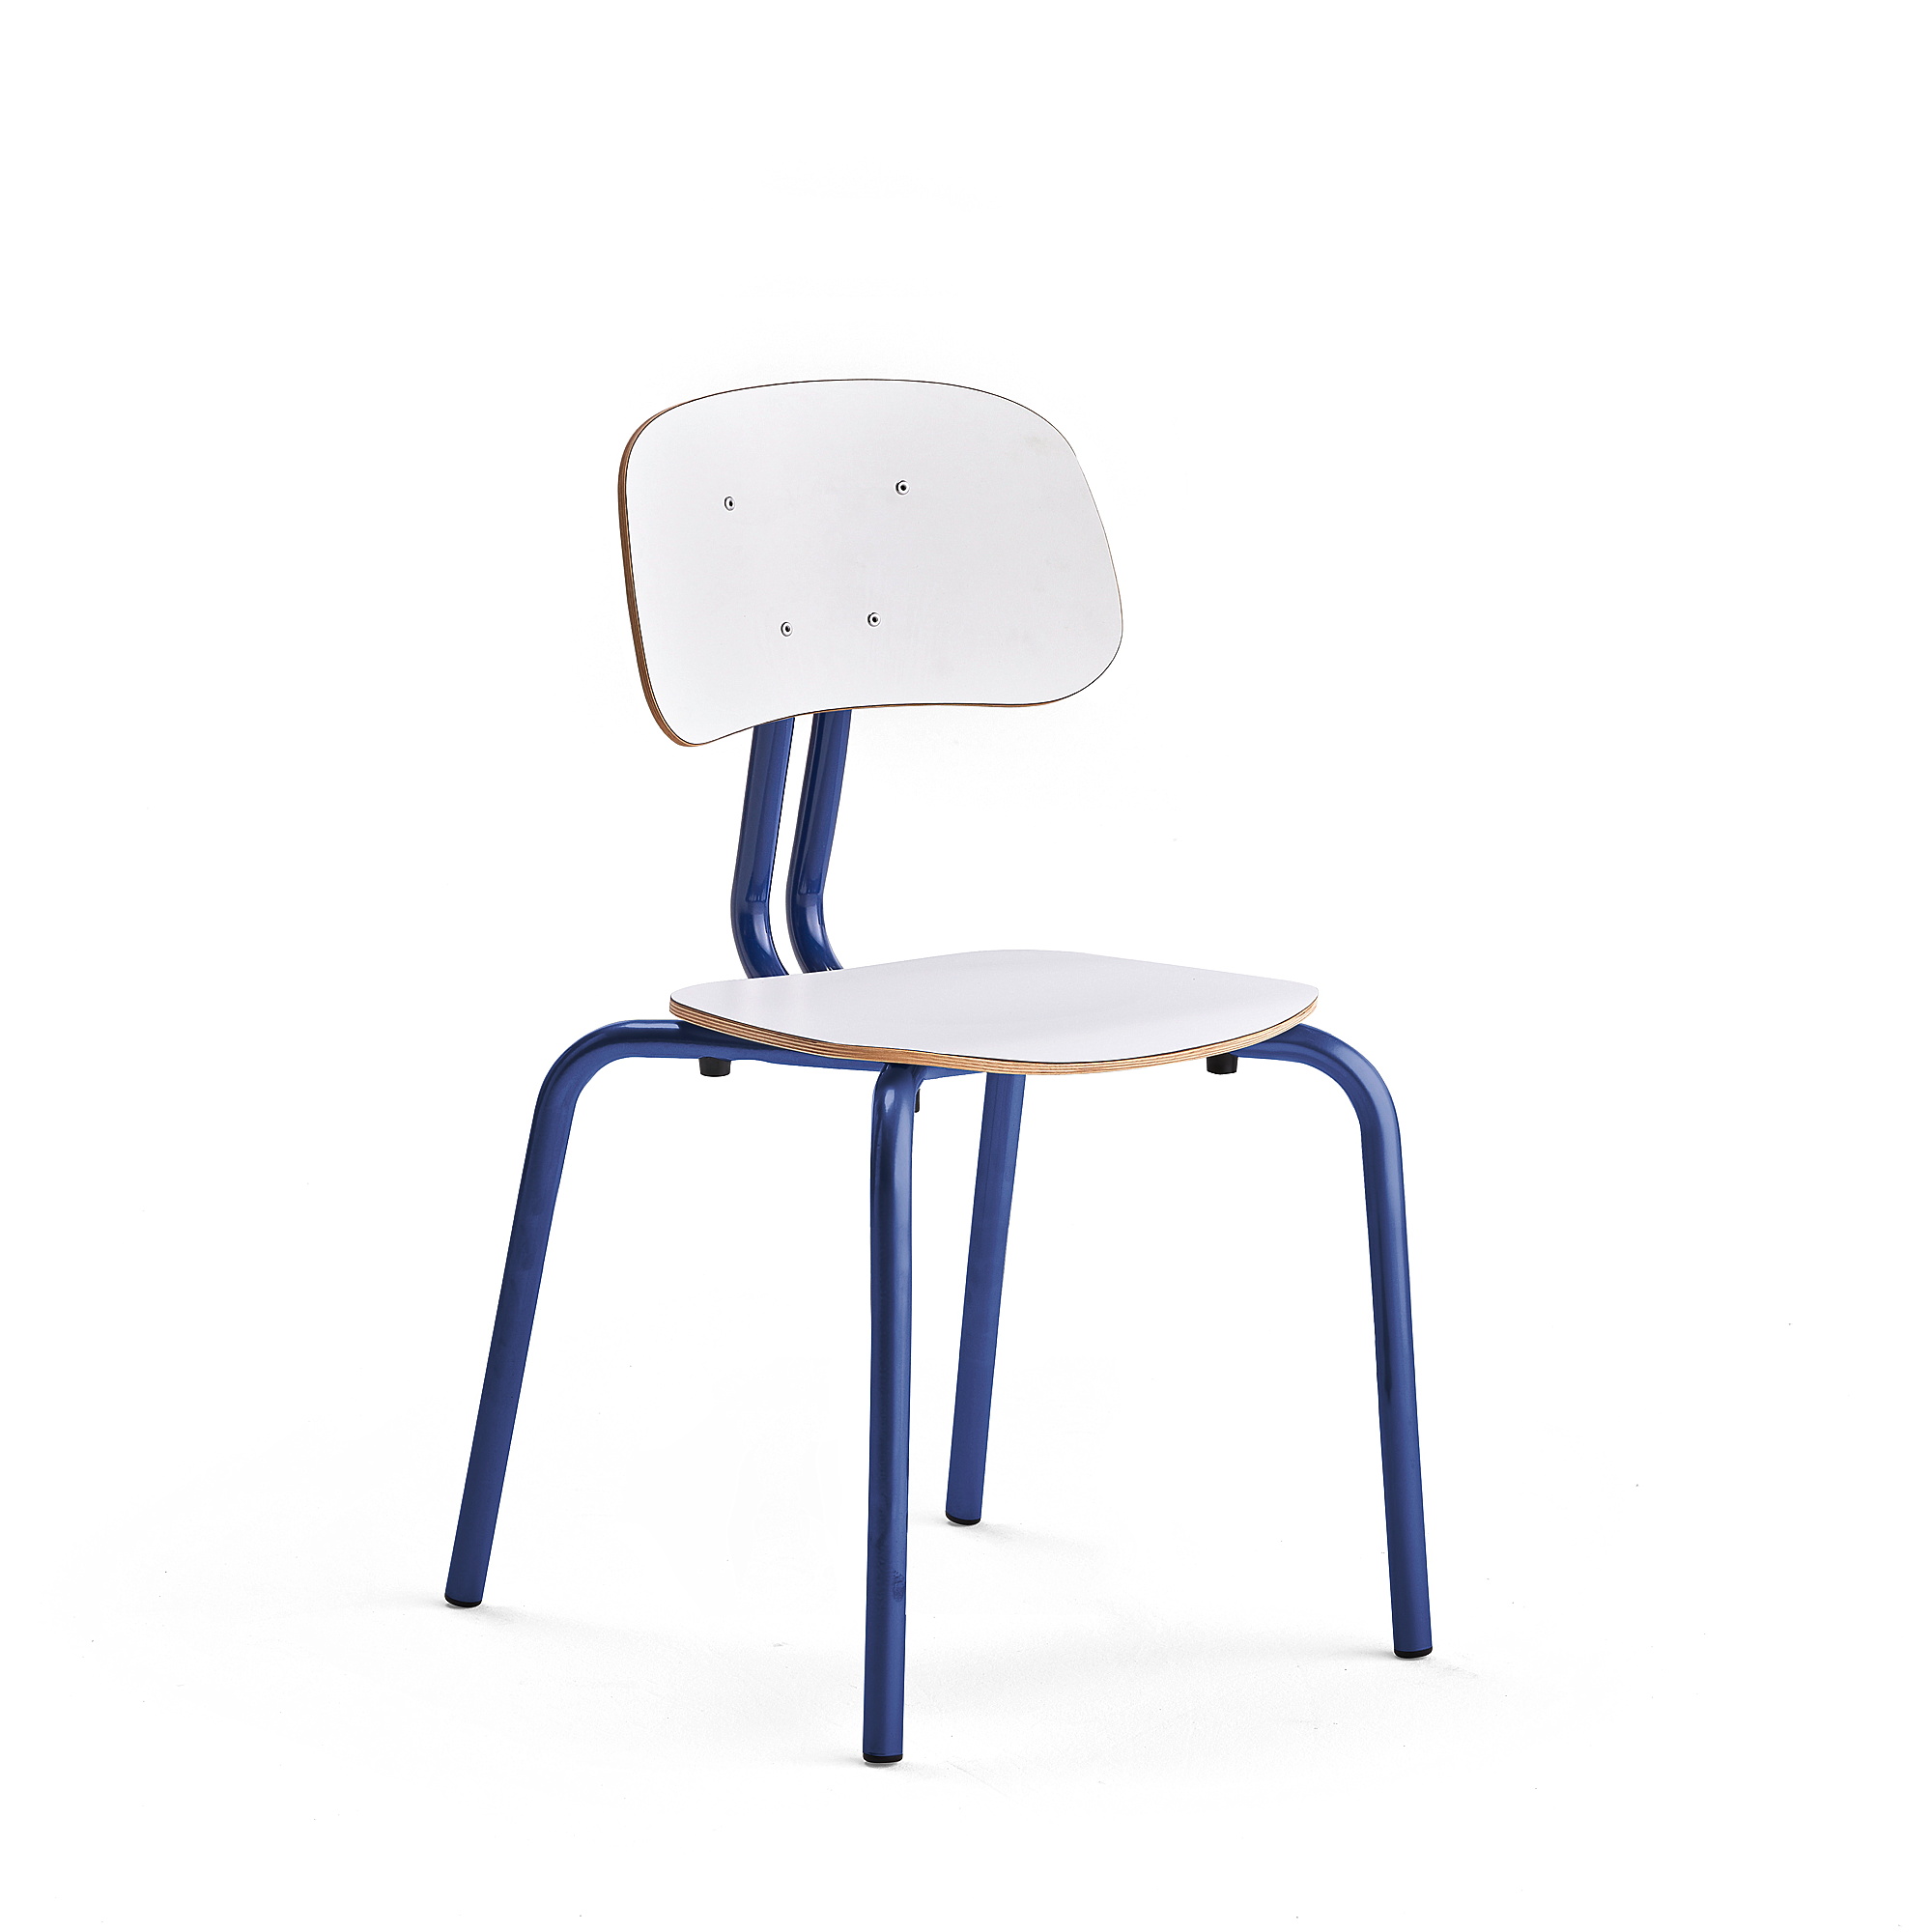 Školní židle YNGVE, 4 nohy, výška 460 mm, tmavě modrá/bílá